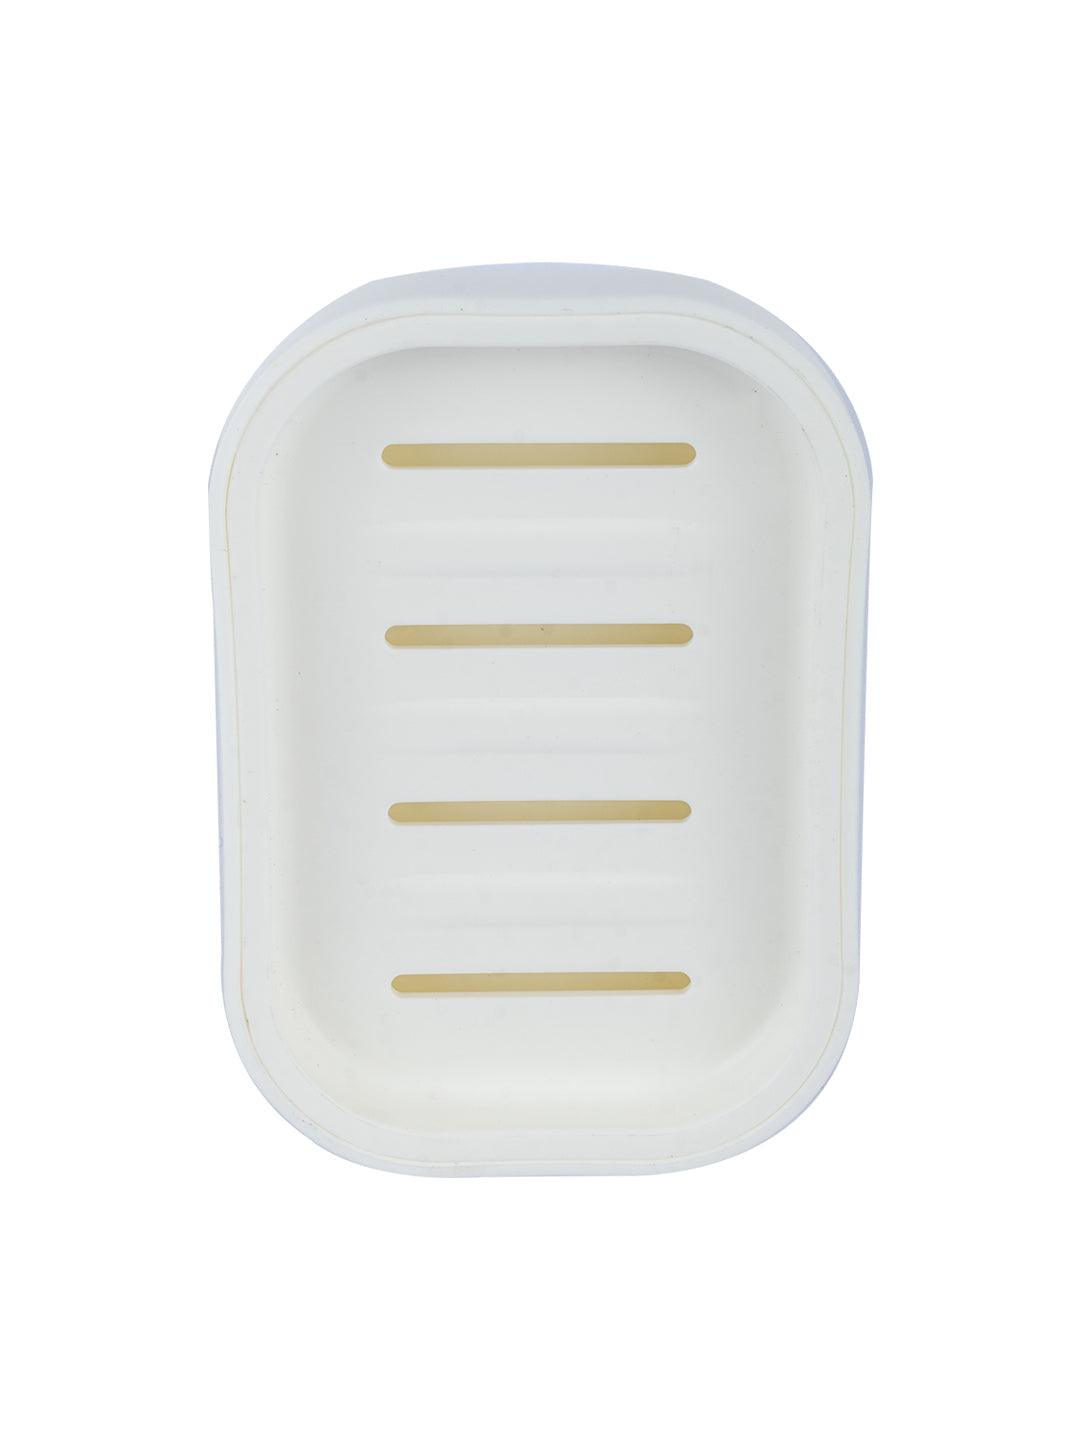 Plastic Soap Case for Bathroom Soap Dish - White